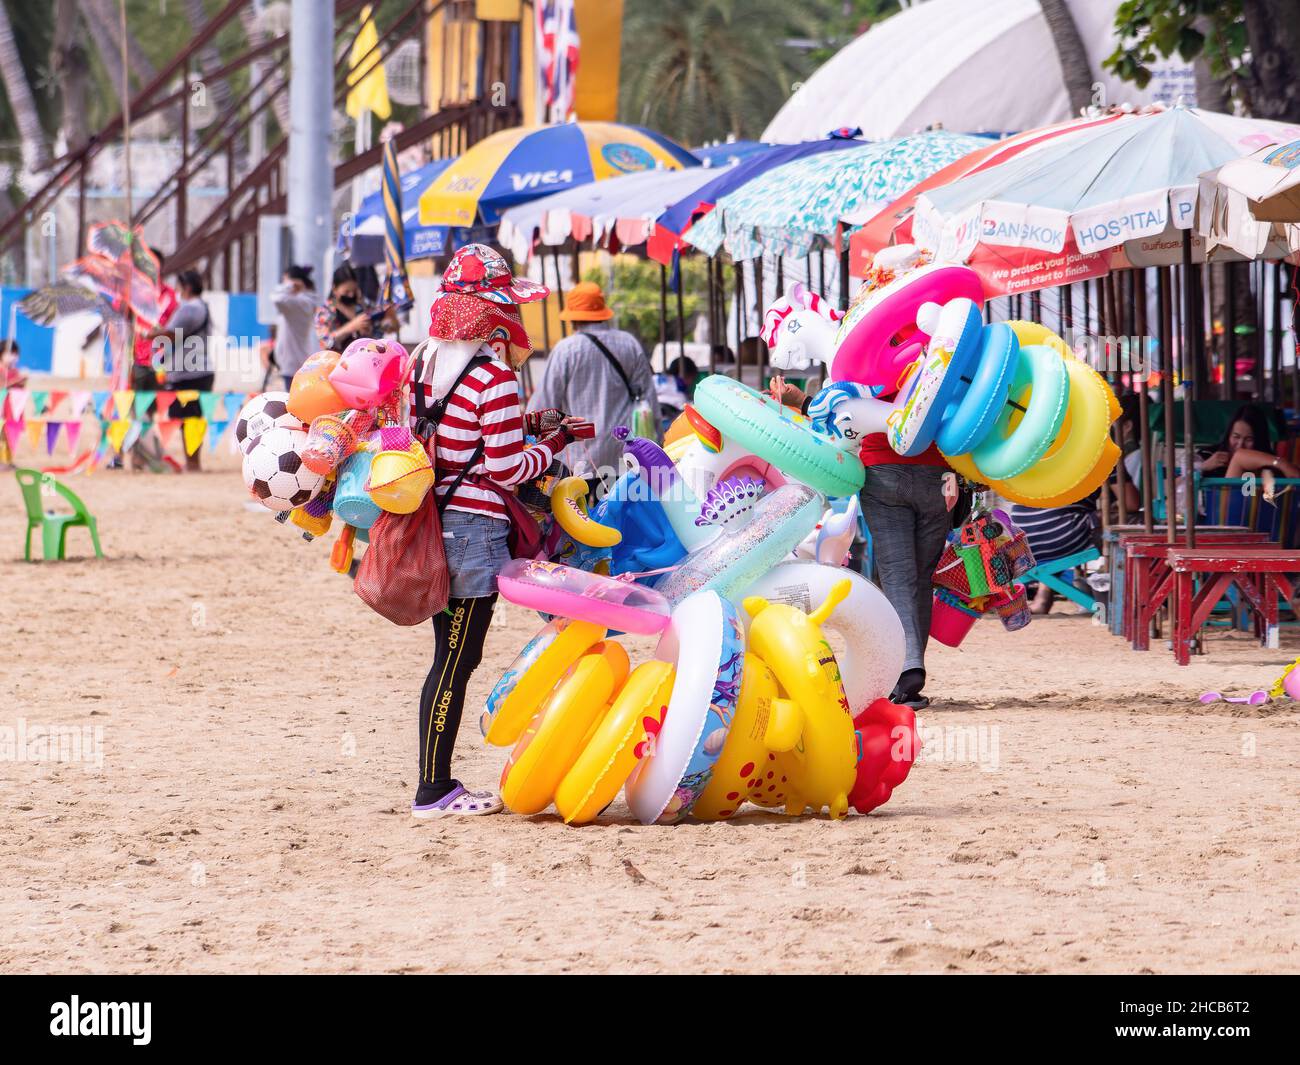 Vendeurs vendant des jouets gonflables de natation à la plage à Pattaya, Thaïlande. Banque D'Images